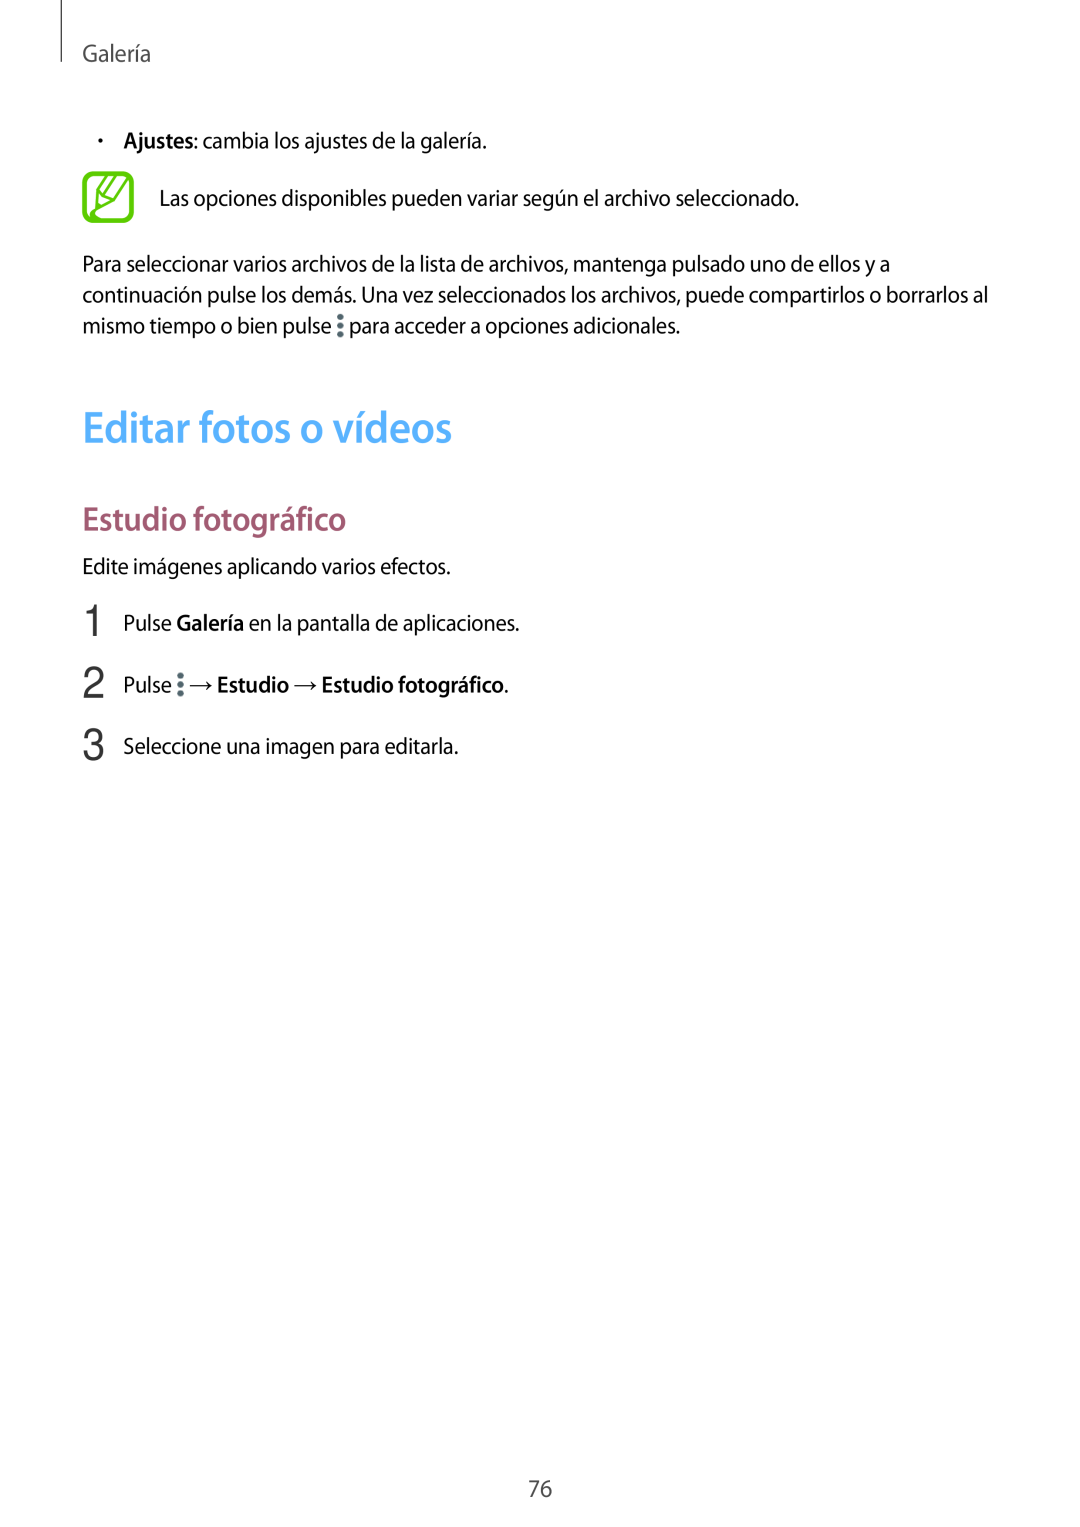 Samsung SM-T700NTSAPHE, SM-T700NZWAXEO manual Editar fotos o vídeos, Pulse → Estudio → Estudio fotográfico, Galería 